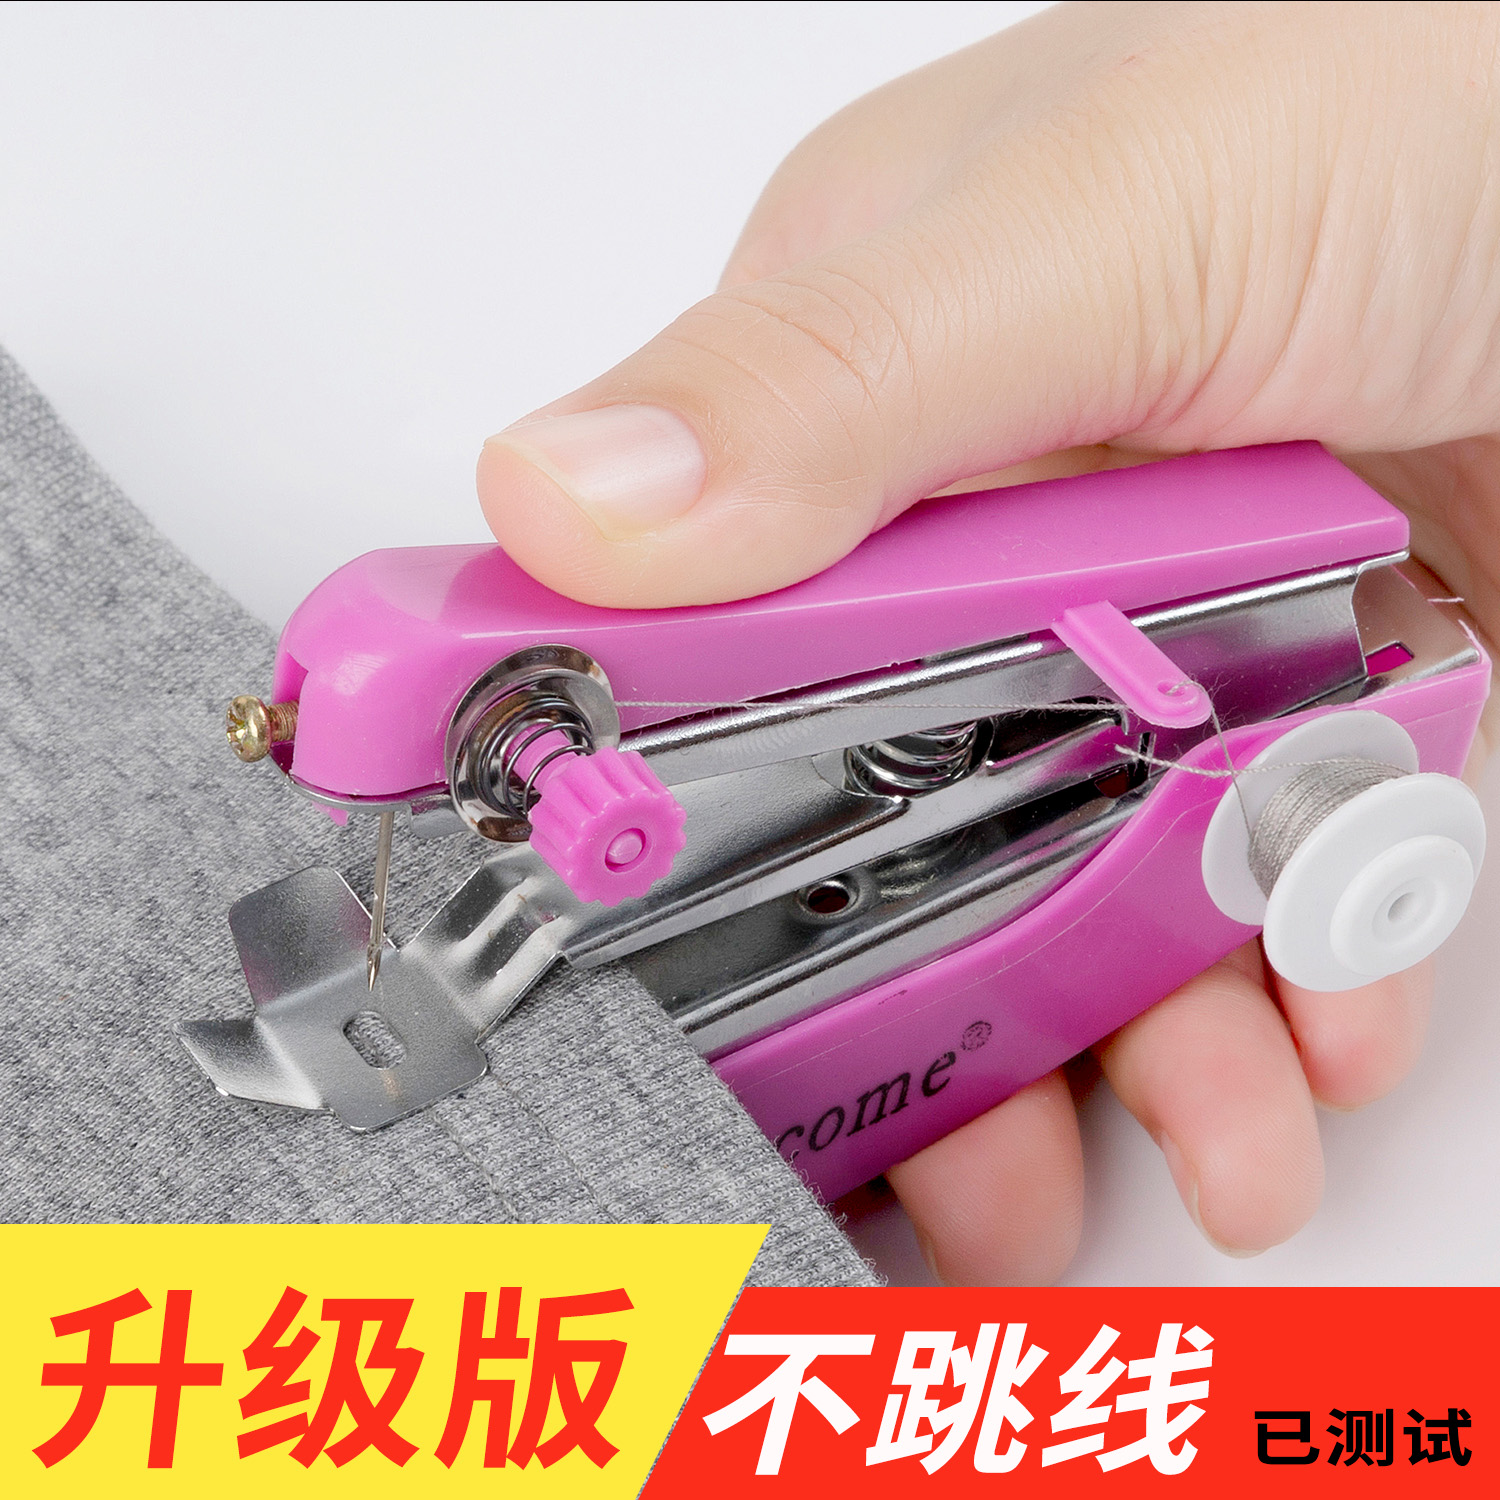 家用手持电动缝纫机DIY多功能便携迷你小型简易吃厚手工裁缝